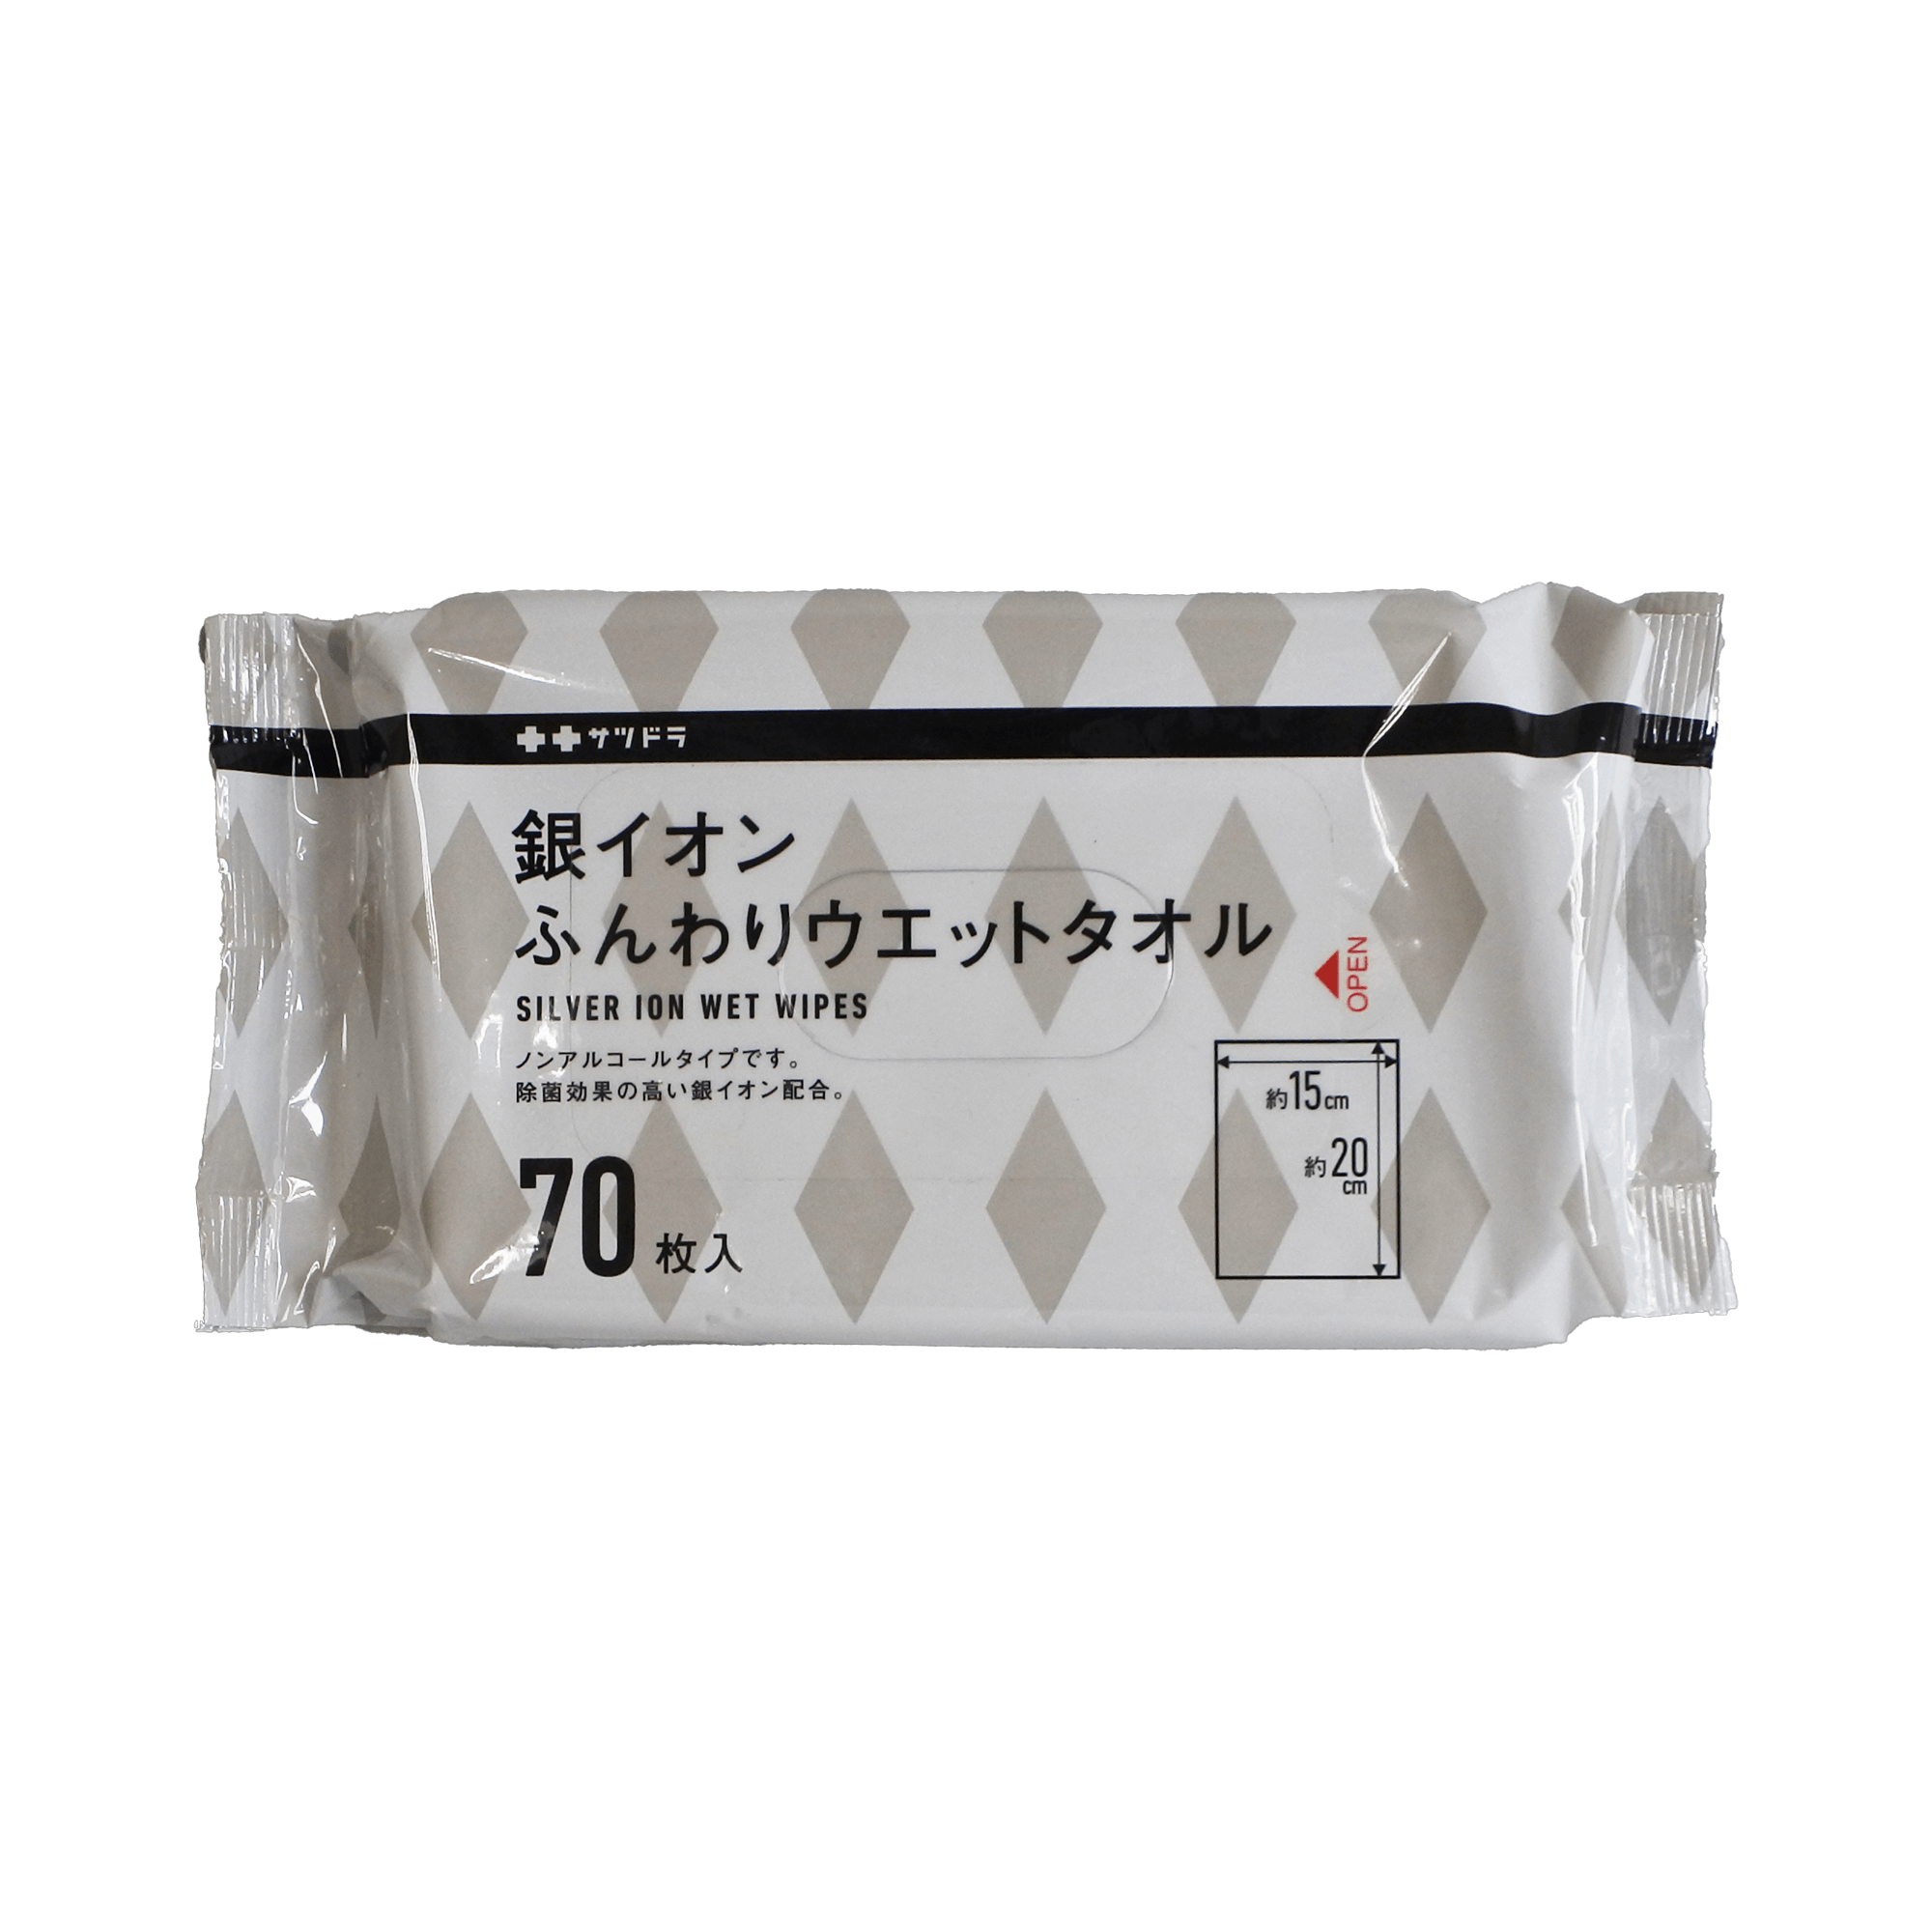 札幌药妆 银离子 柔软湿纸巾 70入